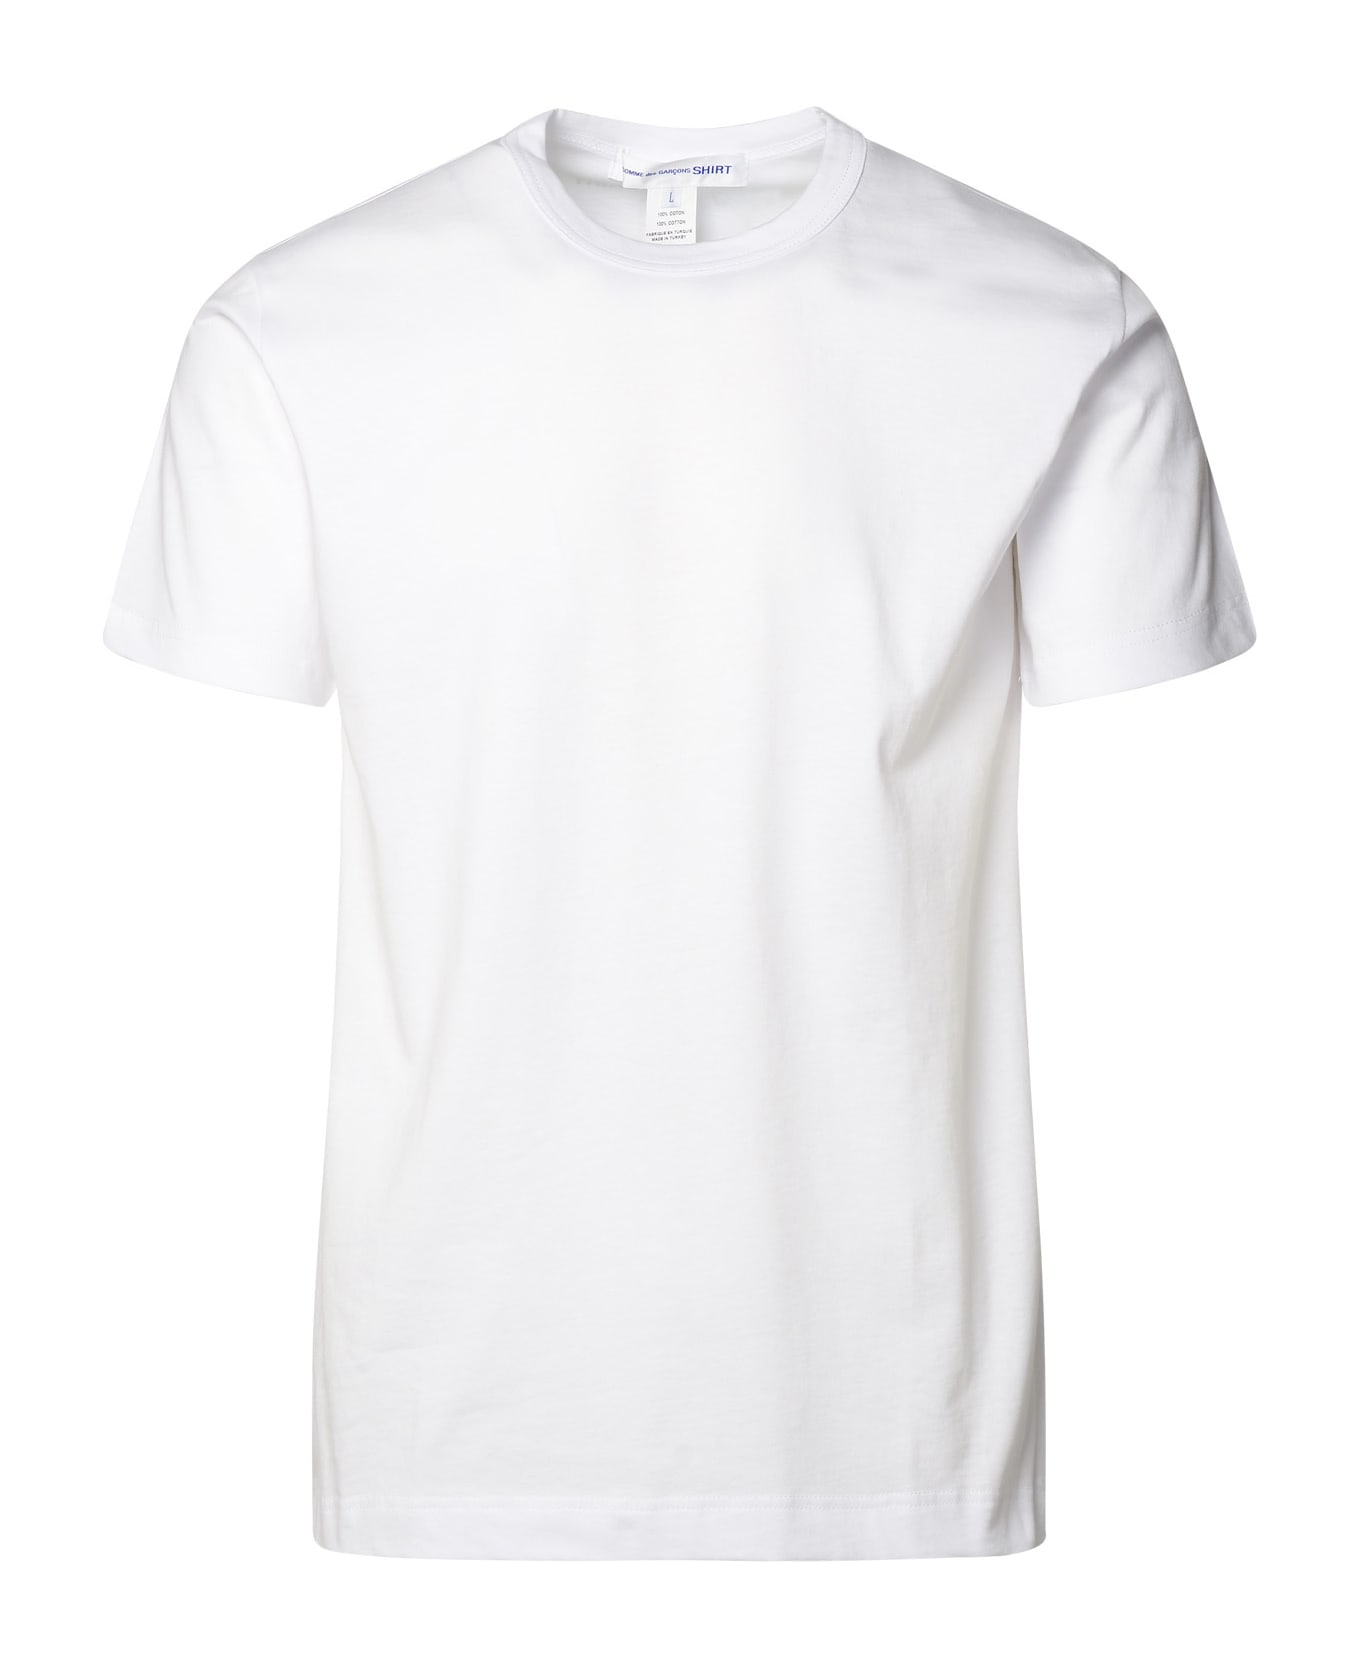 Comme des Garçons Shirt White Cotton T-shirt - White